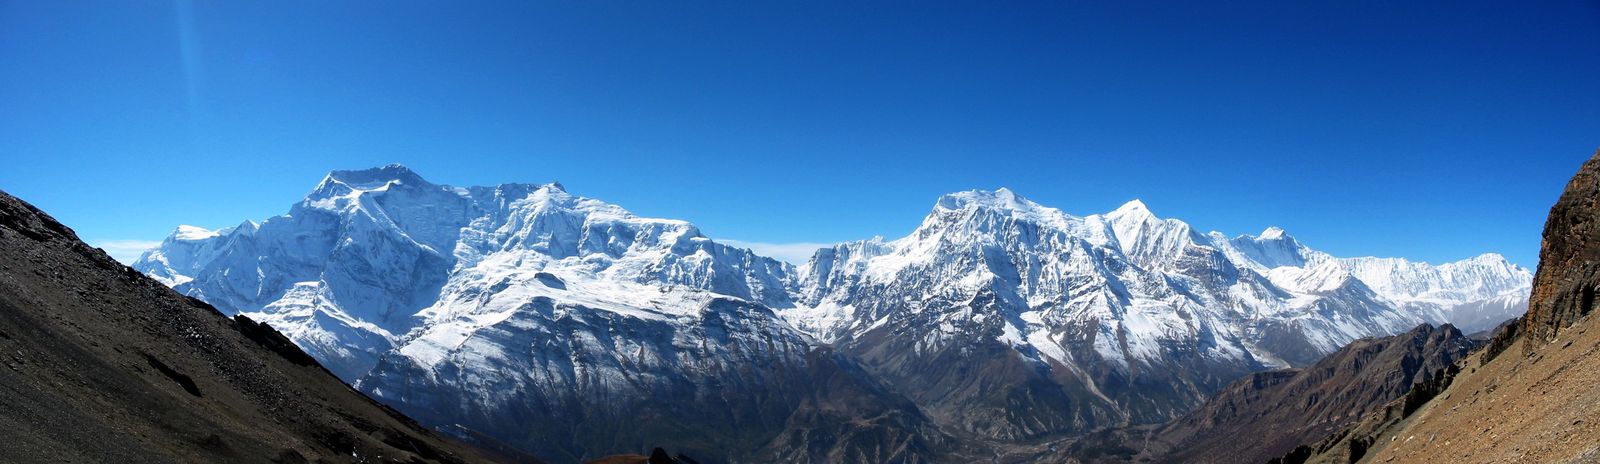 Zleva vrcholy Annapurny a Gangapurny